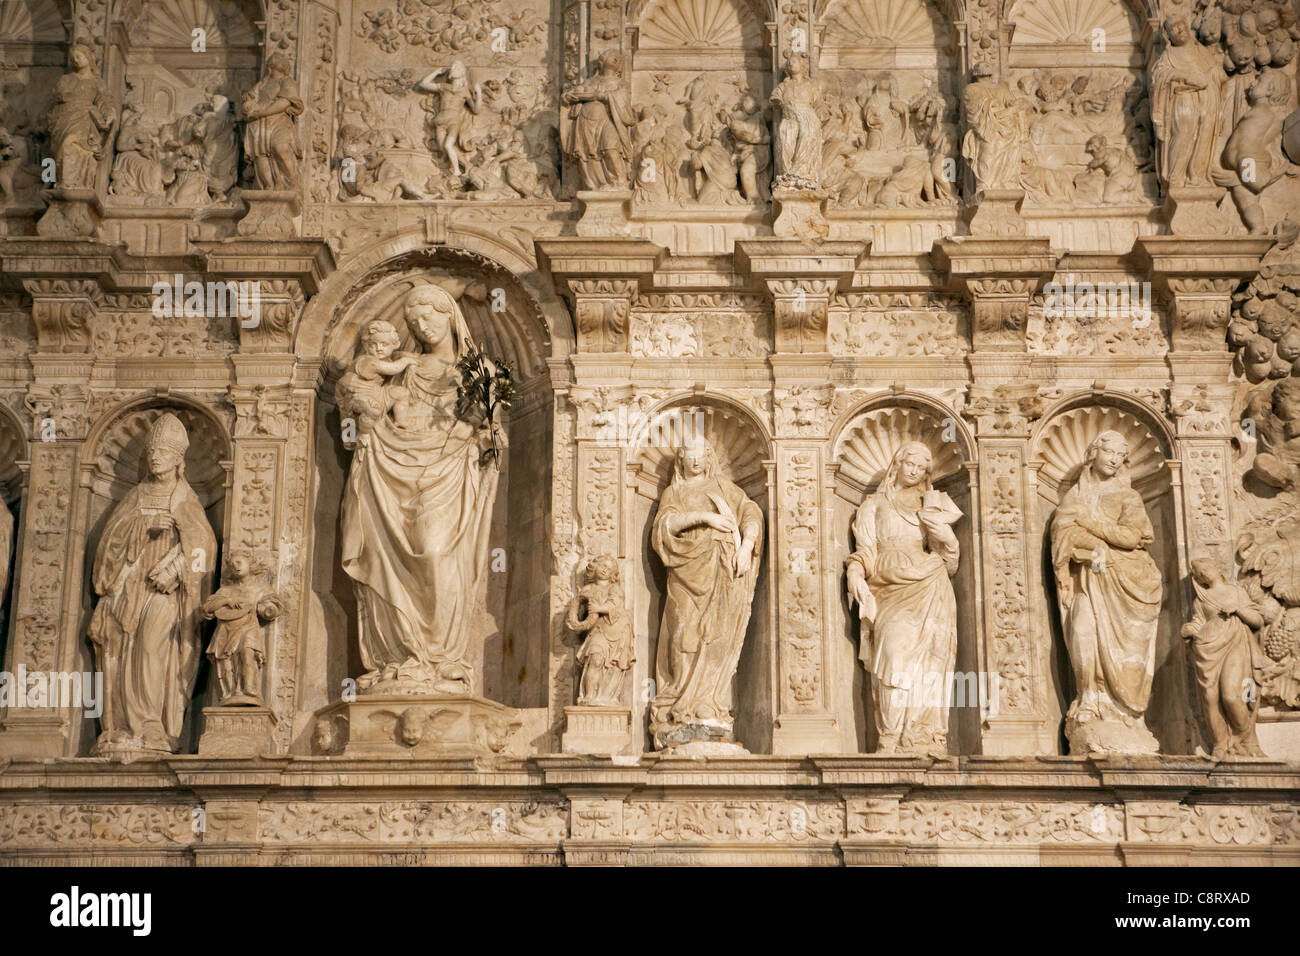 Detail des Altars in der Königlichen Abtei von Santa Maria de Poblet. Vimbodi ich Poblet, Katalonien, Spanien. Stockfoto